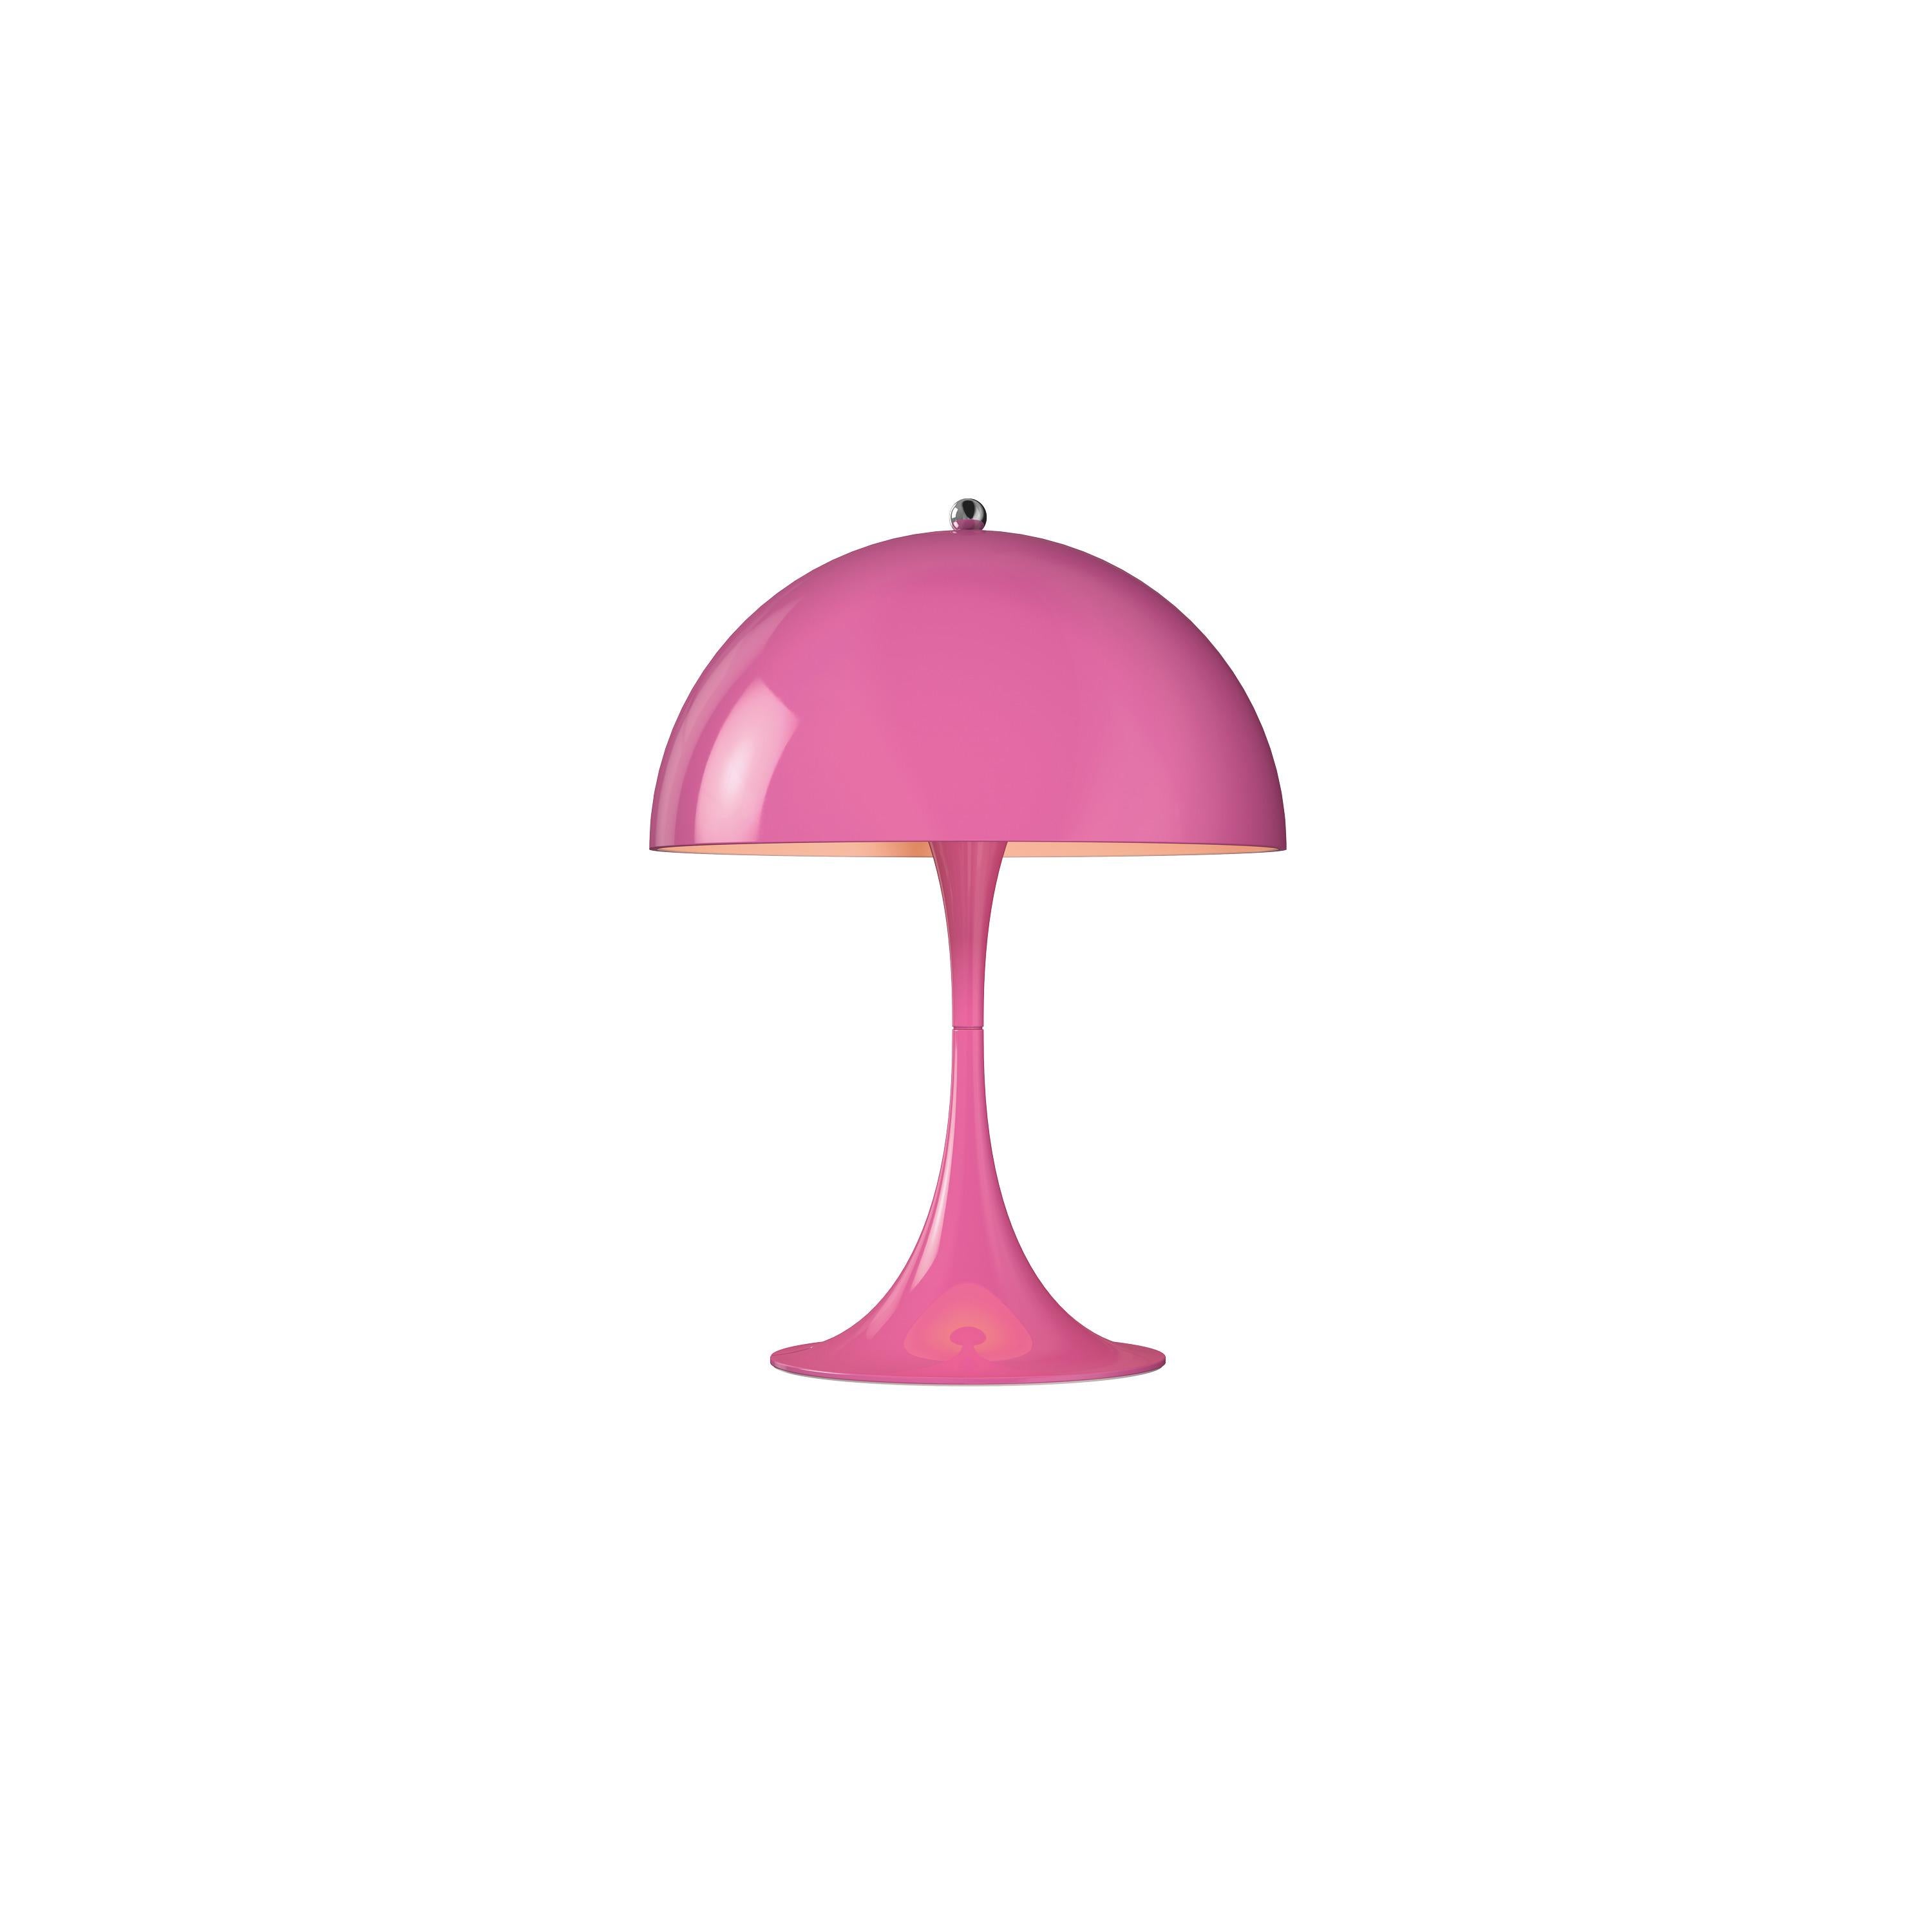 For Sale: Pink (pink.jpg) Louis Poulsen Panthella 250 Table Lamp by Verner Panton